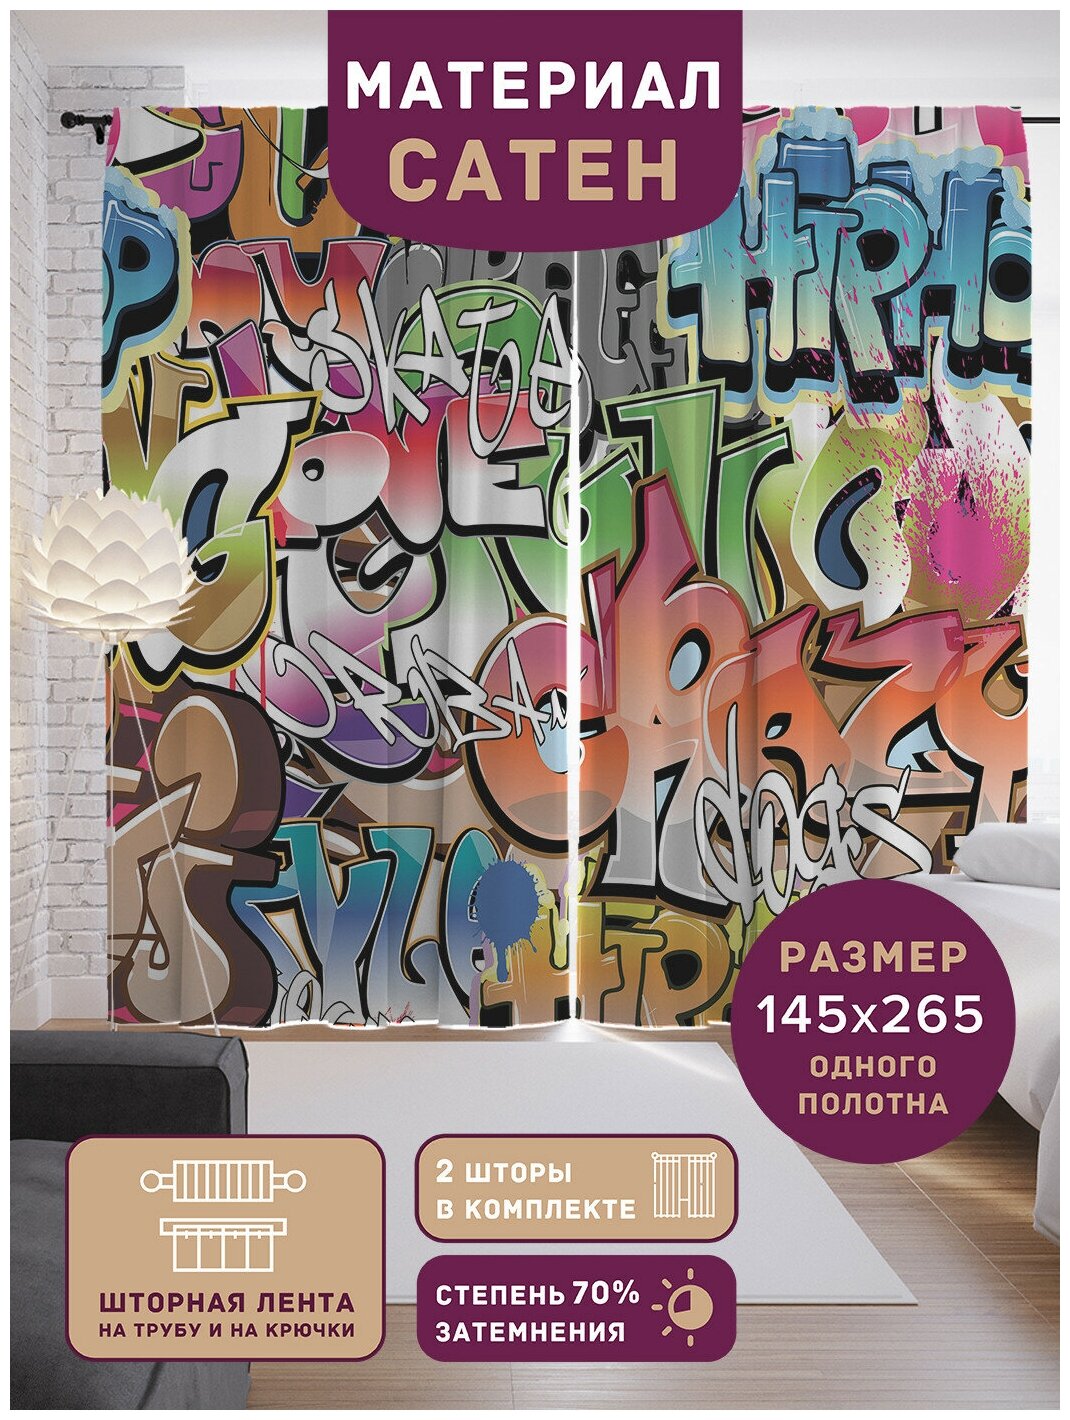 Шторы, фотошторы JoyArty "Яркий граффити" из ткани сатен, 2 полотна 145x265 см, шторная лента и крючки